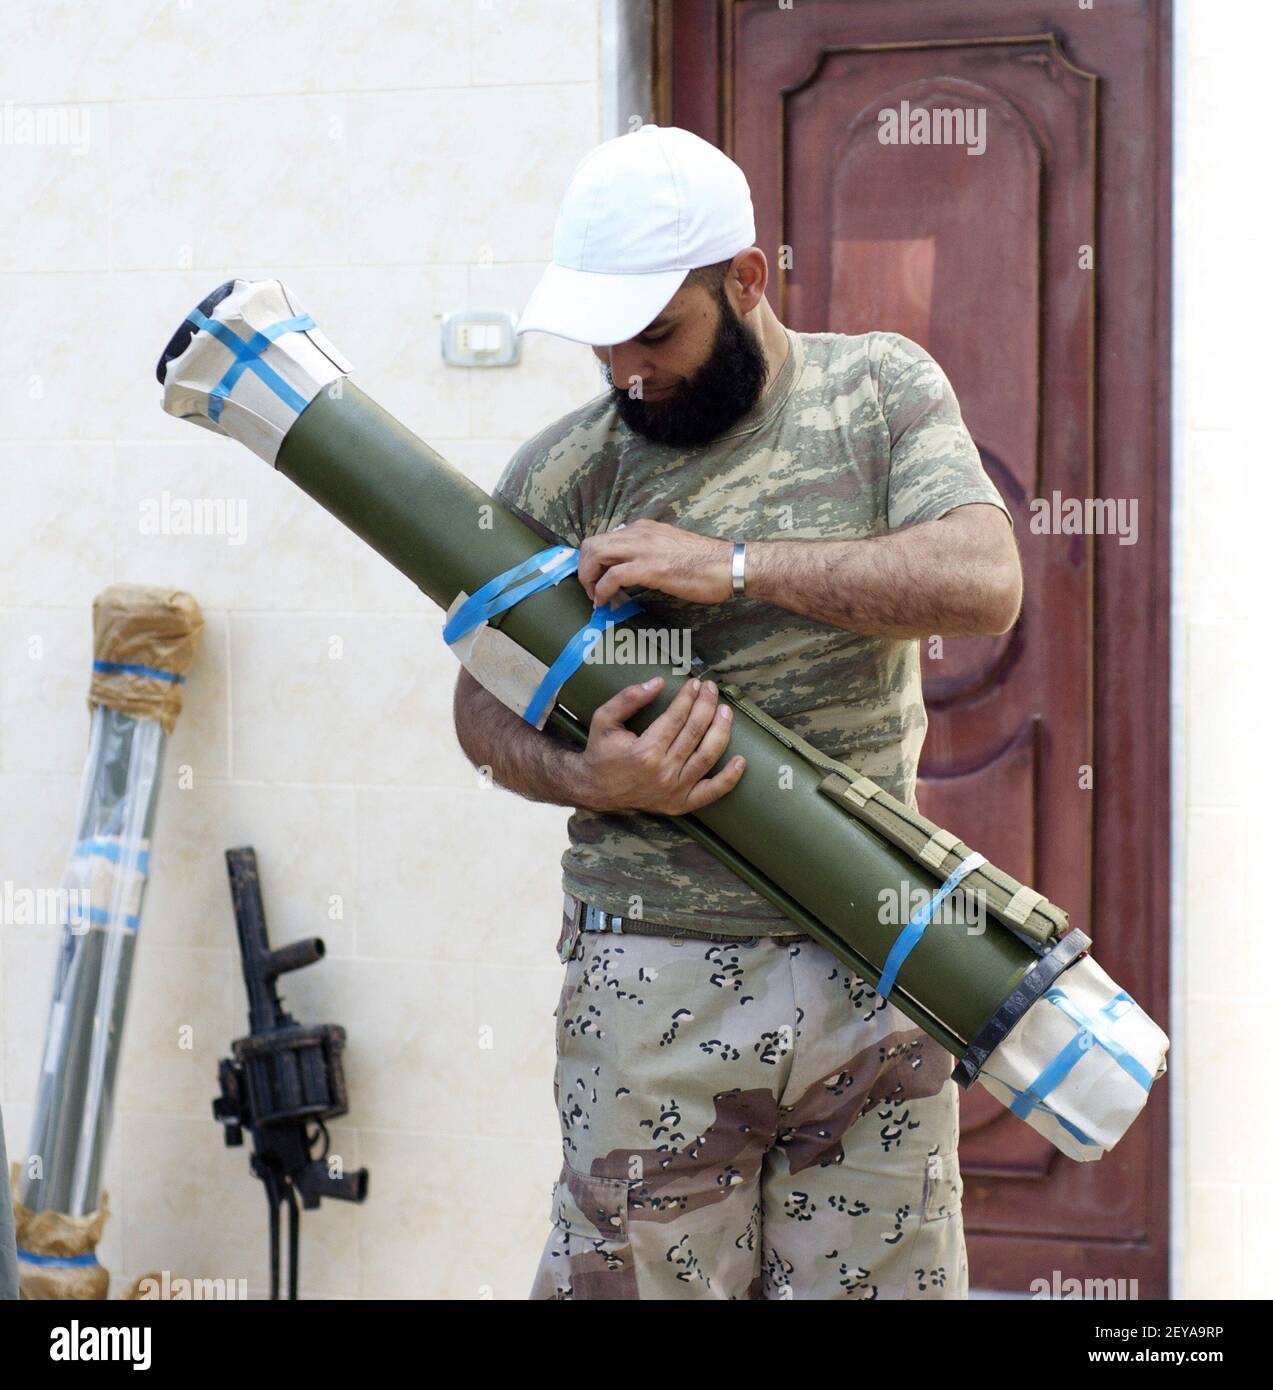 27 févr. 2013 - Kfar Nbouda, - Ahmed Darwish, commandant d'un groupe rebelle syrien appelé la Brigade Nasr, débouche un RPG-27 à Kfar Nbouda, Syrie, le 27 février 2013. Au cours des derniers mois, les rebelles ont acheté des armes plus avancées sur le marché noir et auprès de sponsors étatiques comme l'Arabie saoudite. Un lanceur de grenade RBG-6, qui fait partie d'une cargaison d'armes en provenance d'Arabie saoudite, repose contre le mur. Crédit photo: David Enders/MCT/Sipa USA Banque D'Images